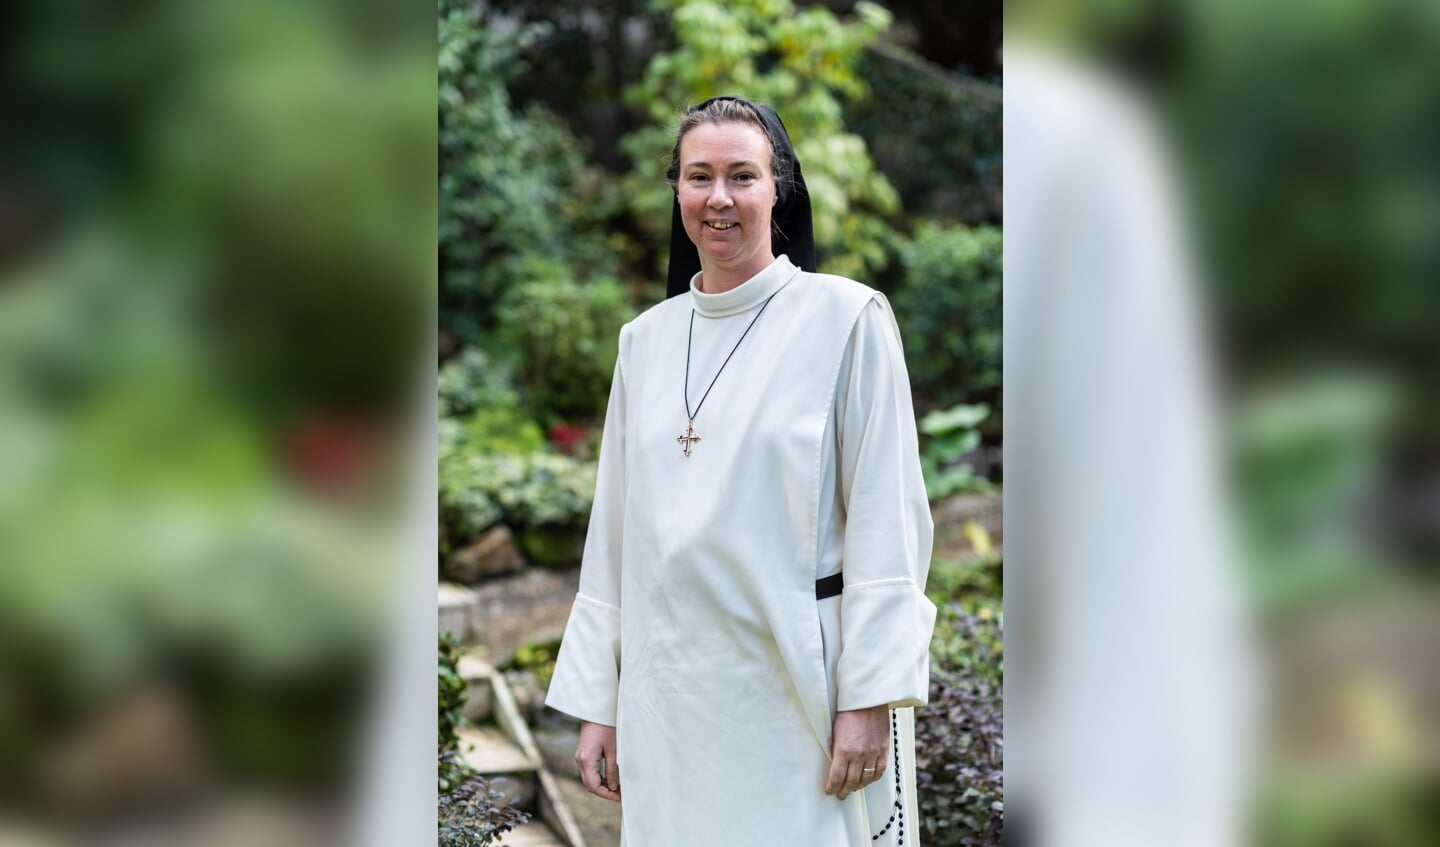 'Ik merkte dat ik over mijn grenzen ging. En er was daar niemand die dat tegenhield.' Zuster Catharina Al adviseert religieuze gemeenschappen nu over een veilig klimaat voor nieuwkomers.